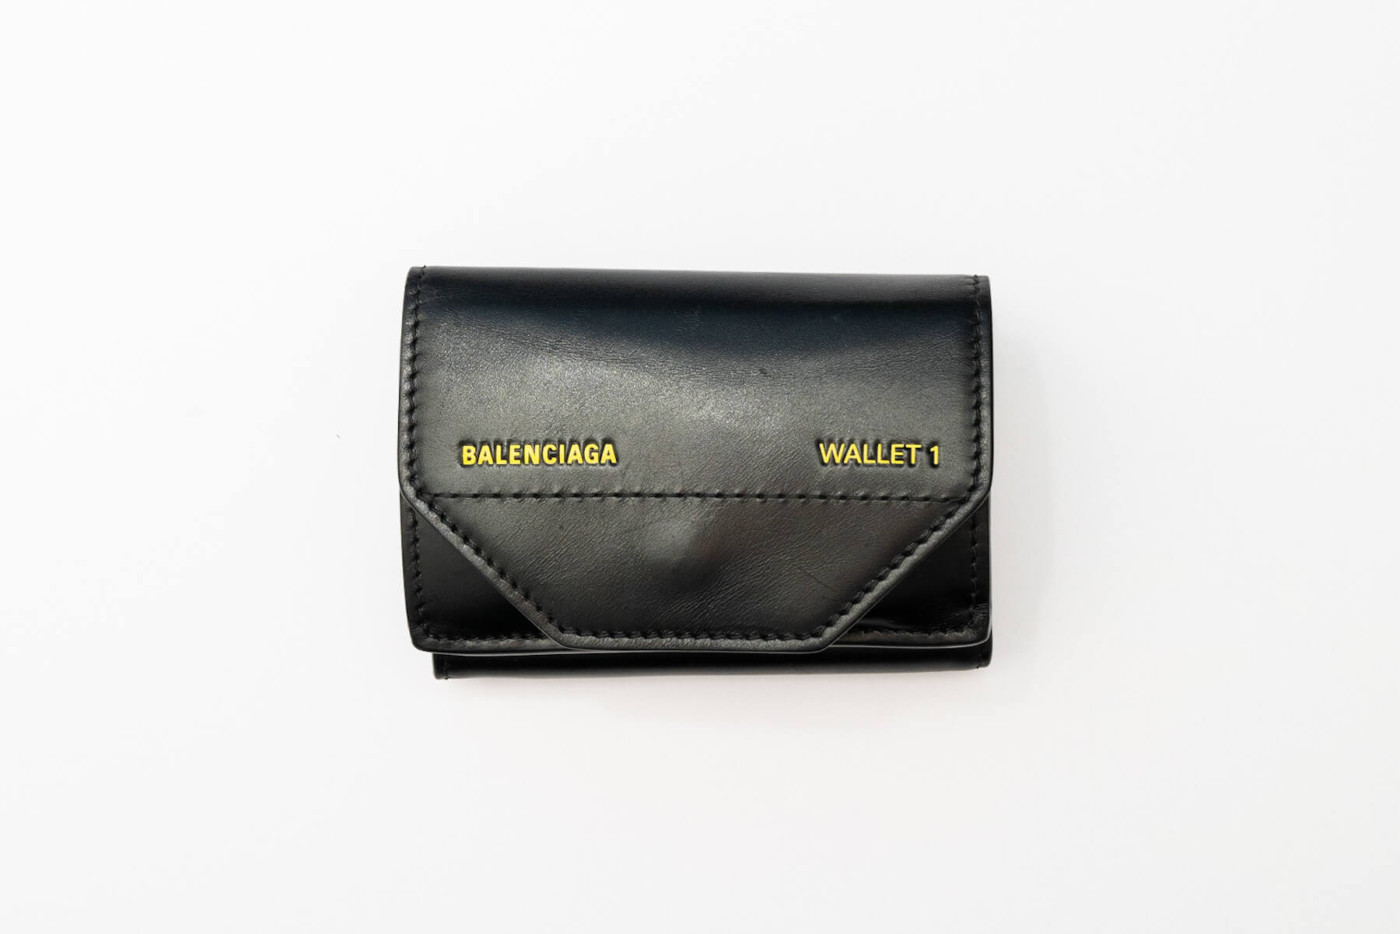 BALENCIAGAの小さい財布に一目惚れ。日本未発売モデル「ETUI MINI ...